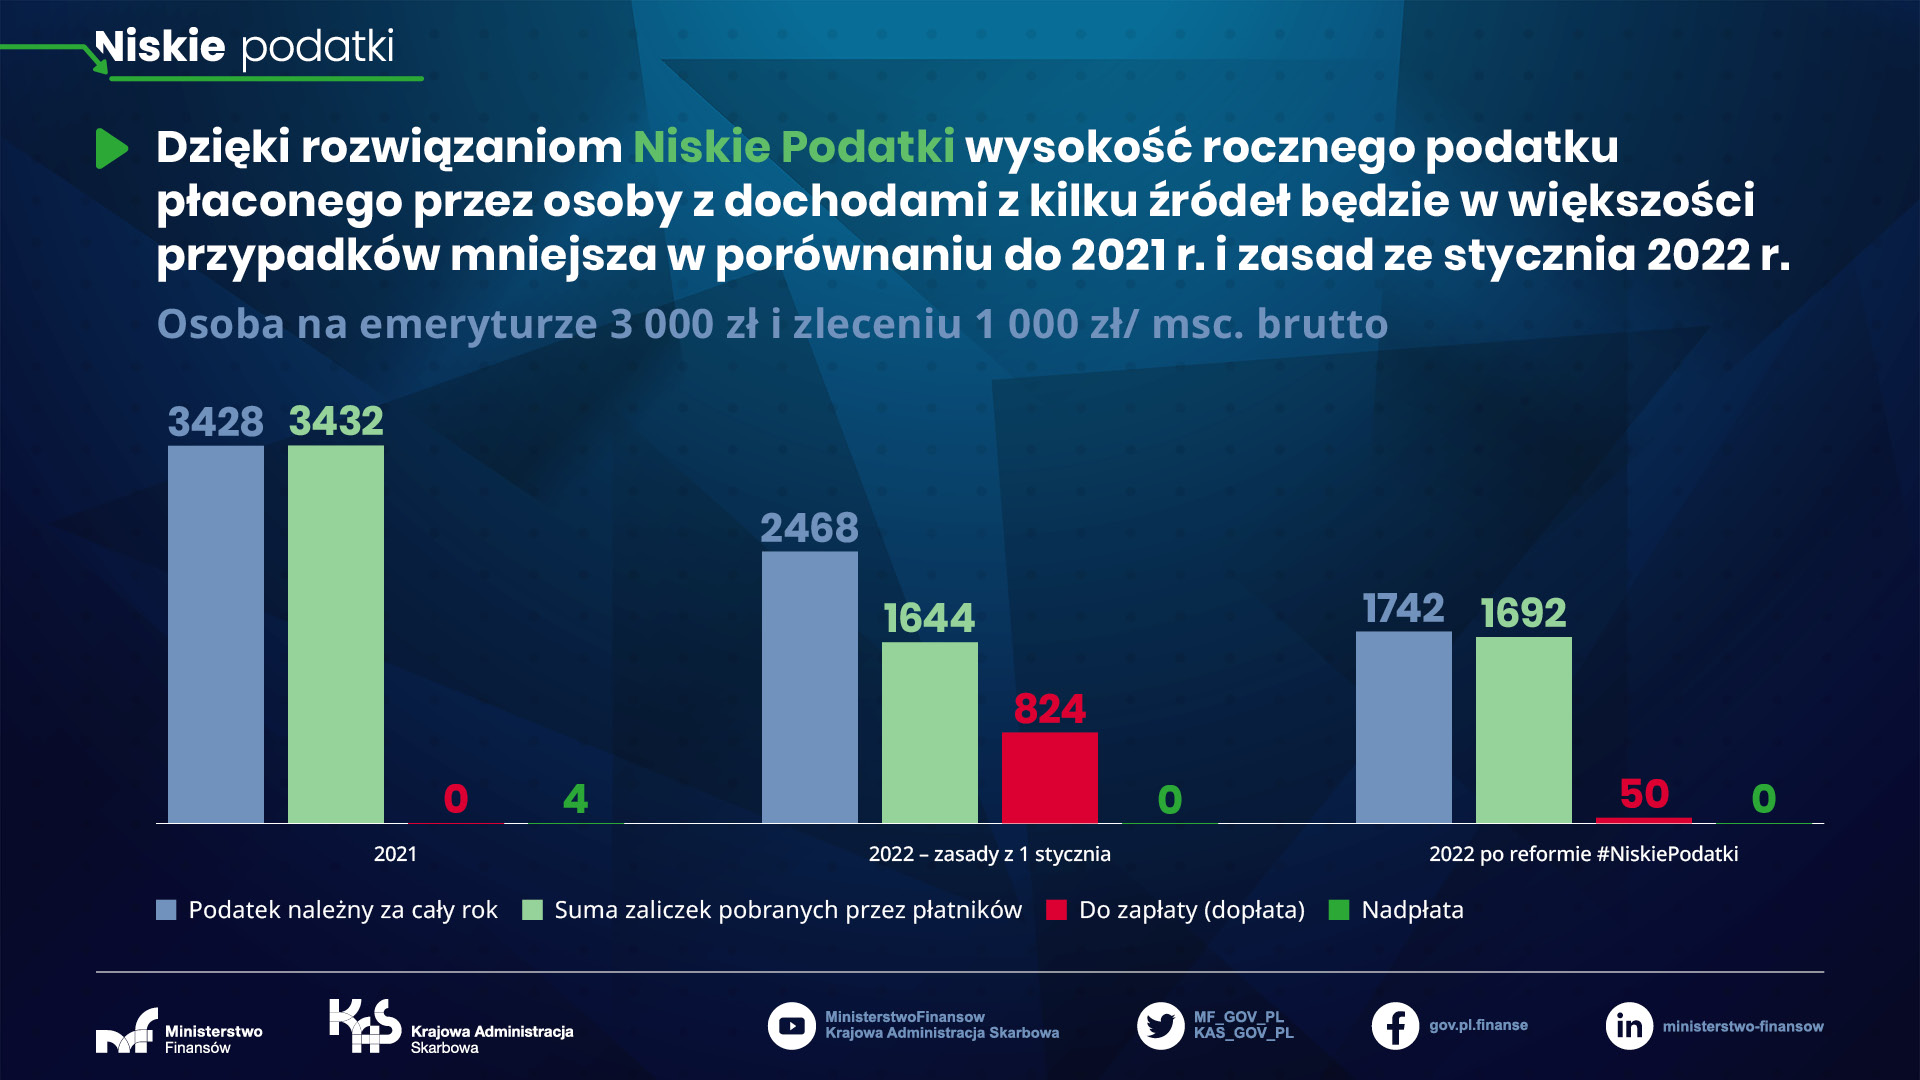 Niskie podatki - osoba na emeryturze 3 000 zł i zleceniu 1 000 zł/msc brutto